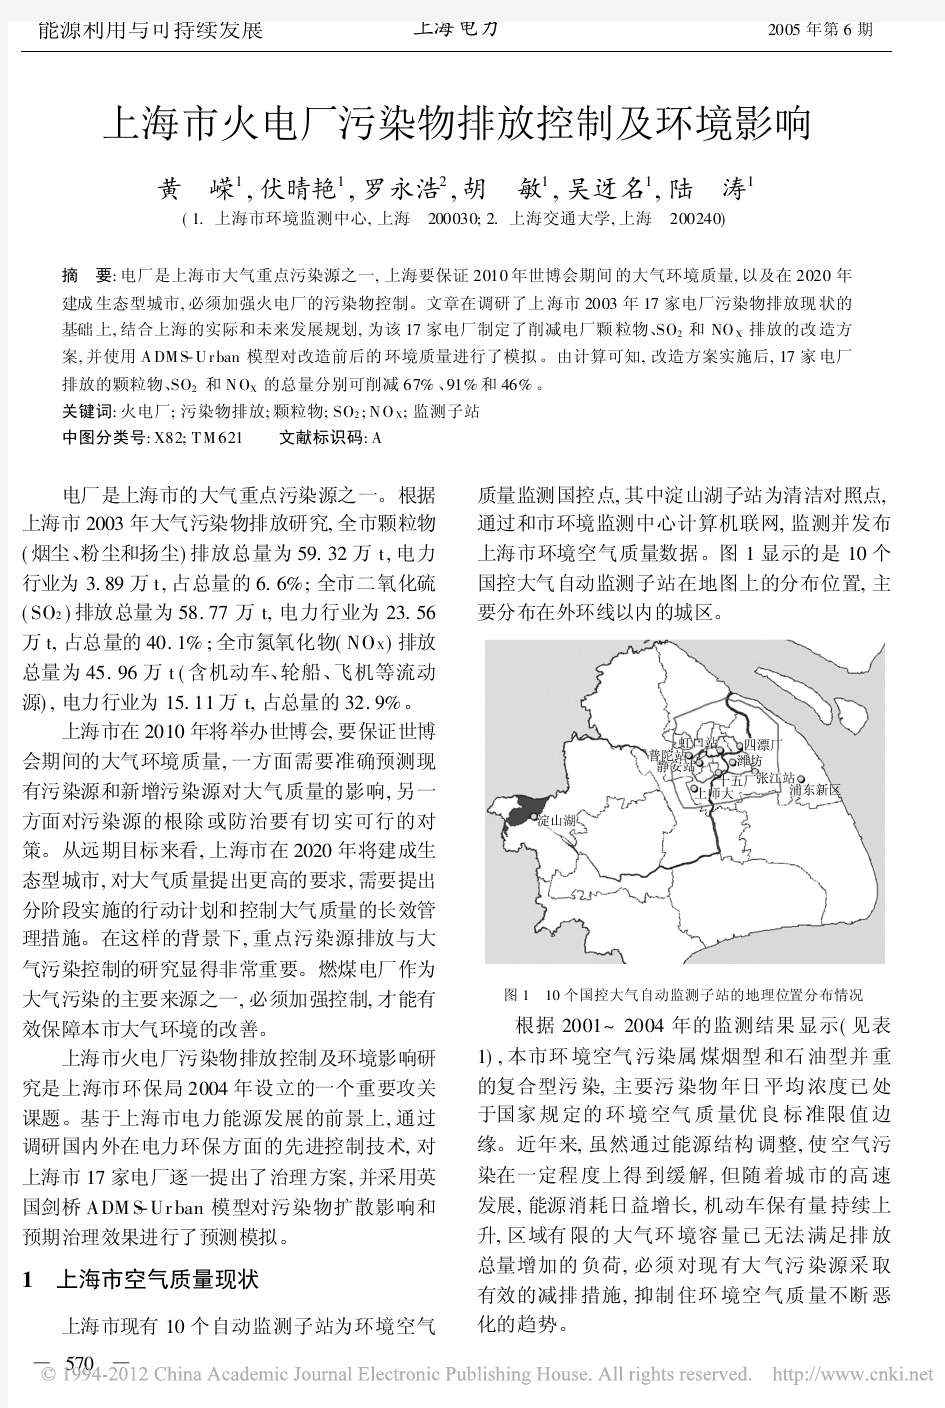 上海市火电厂污染物排放控制及环境影响